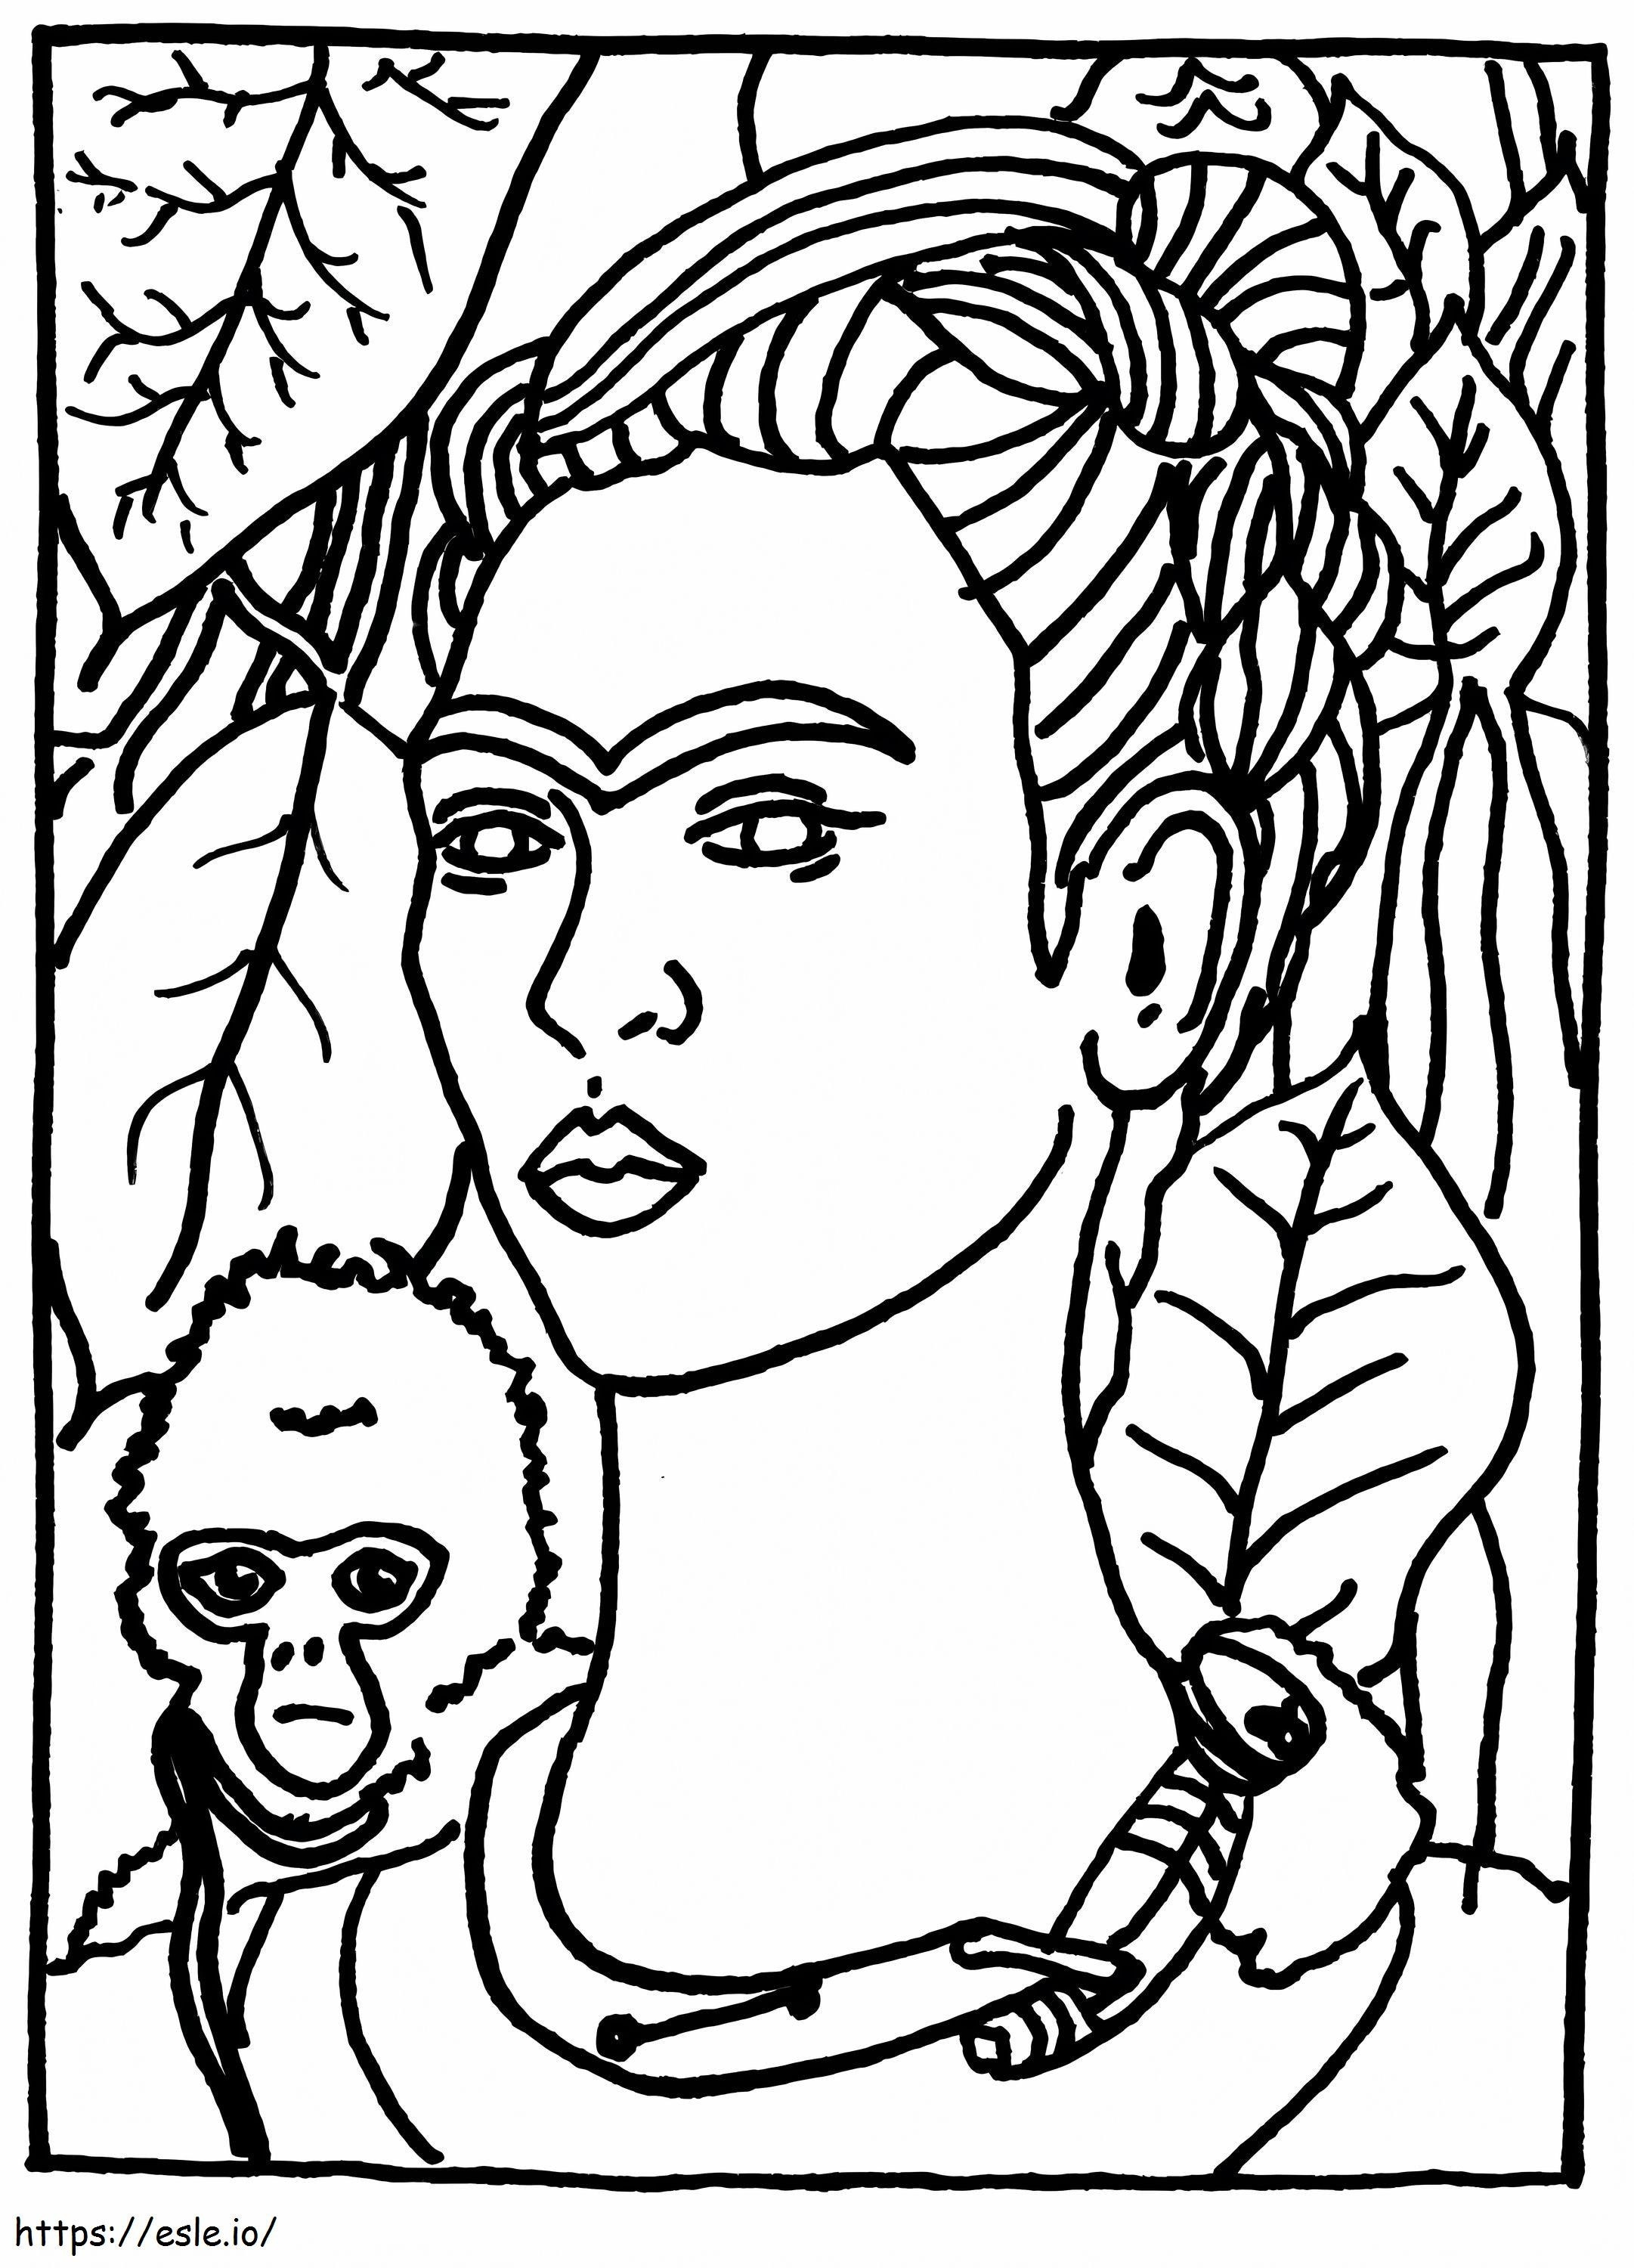 Freie Frida Kahlo ausmalbilder